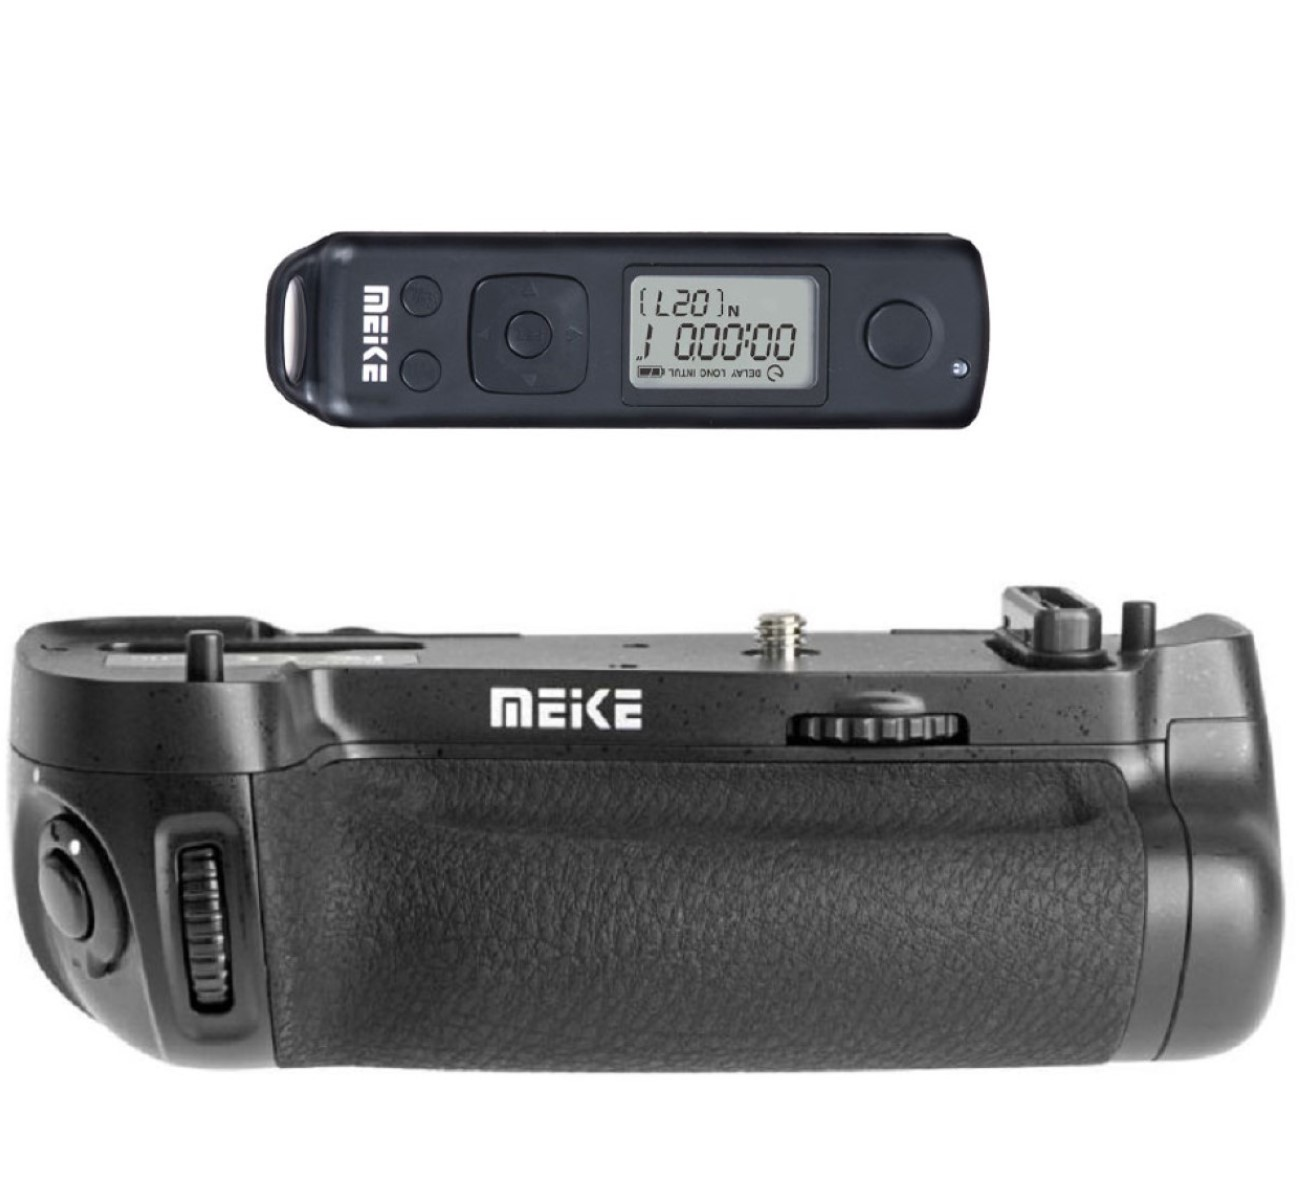 für Nikon D750 Batteriegriff für passend Black, wie Funk-Timer-Fernauslöser D750 AYEX MK-DR750, mit MB-D16 Nikon Batteriegriff,